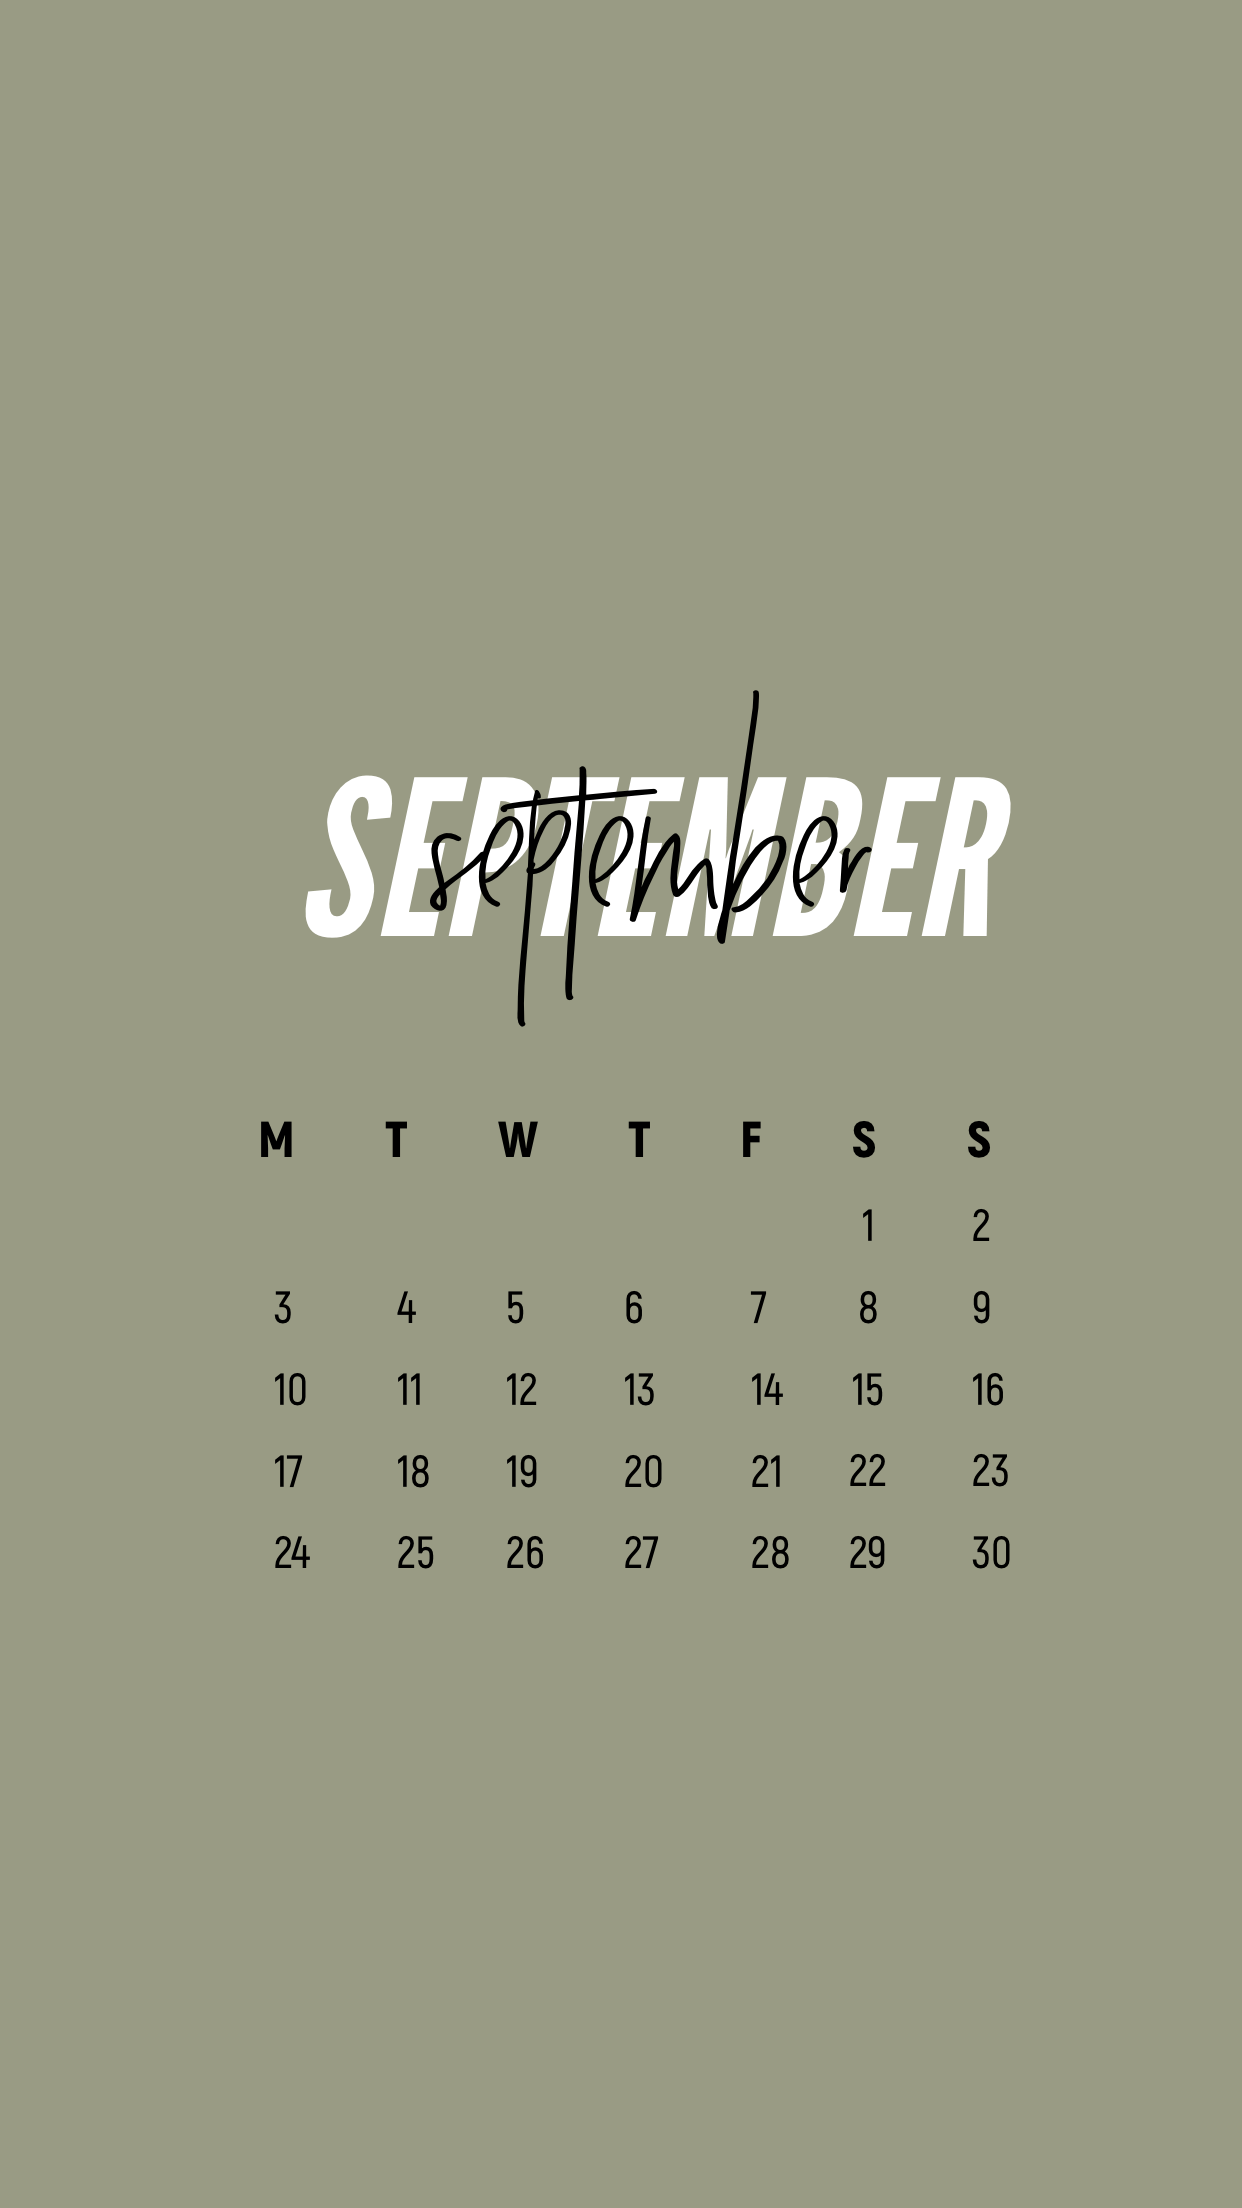 iPhone Calendar Wallpaper September 2022